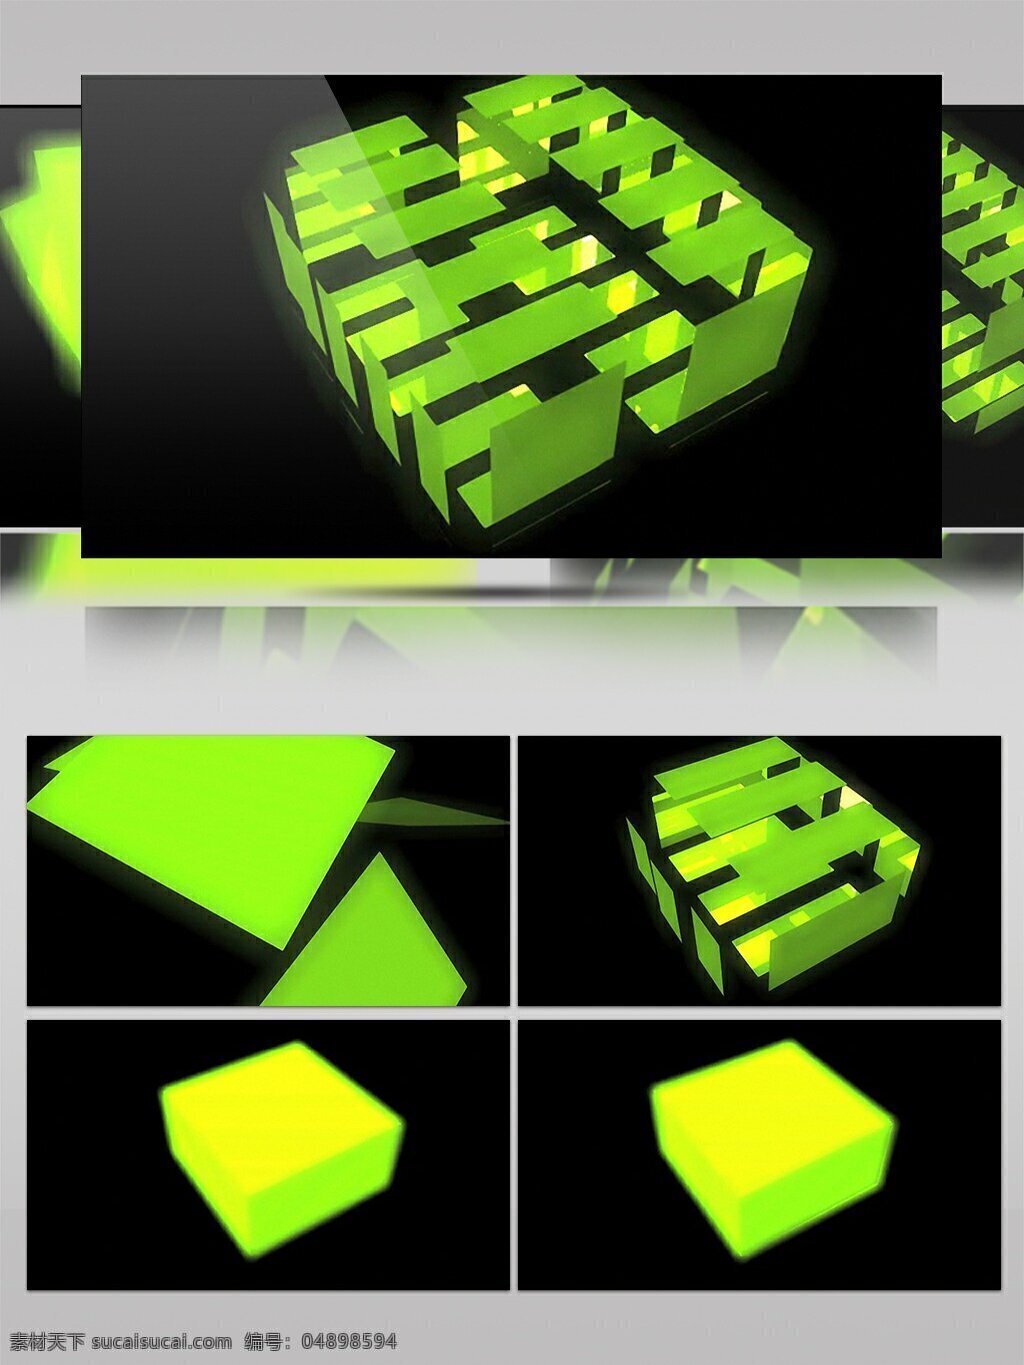 酷 炫 简约 几何 创意 形状 视频 视频素材 动态视频素材 方块 立方体 高清视频素材 黄绿色